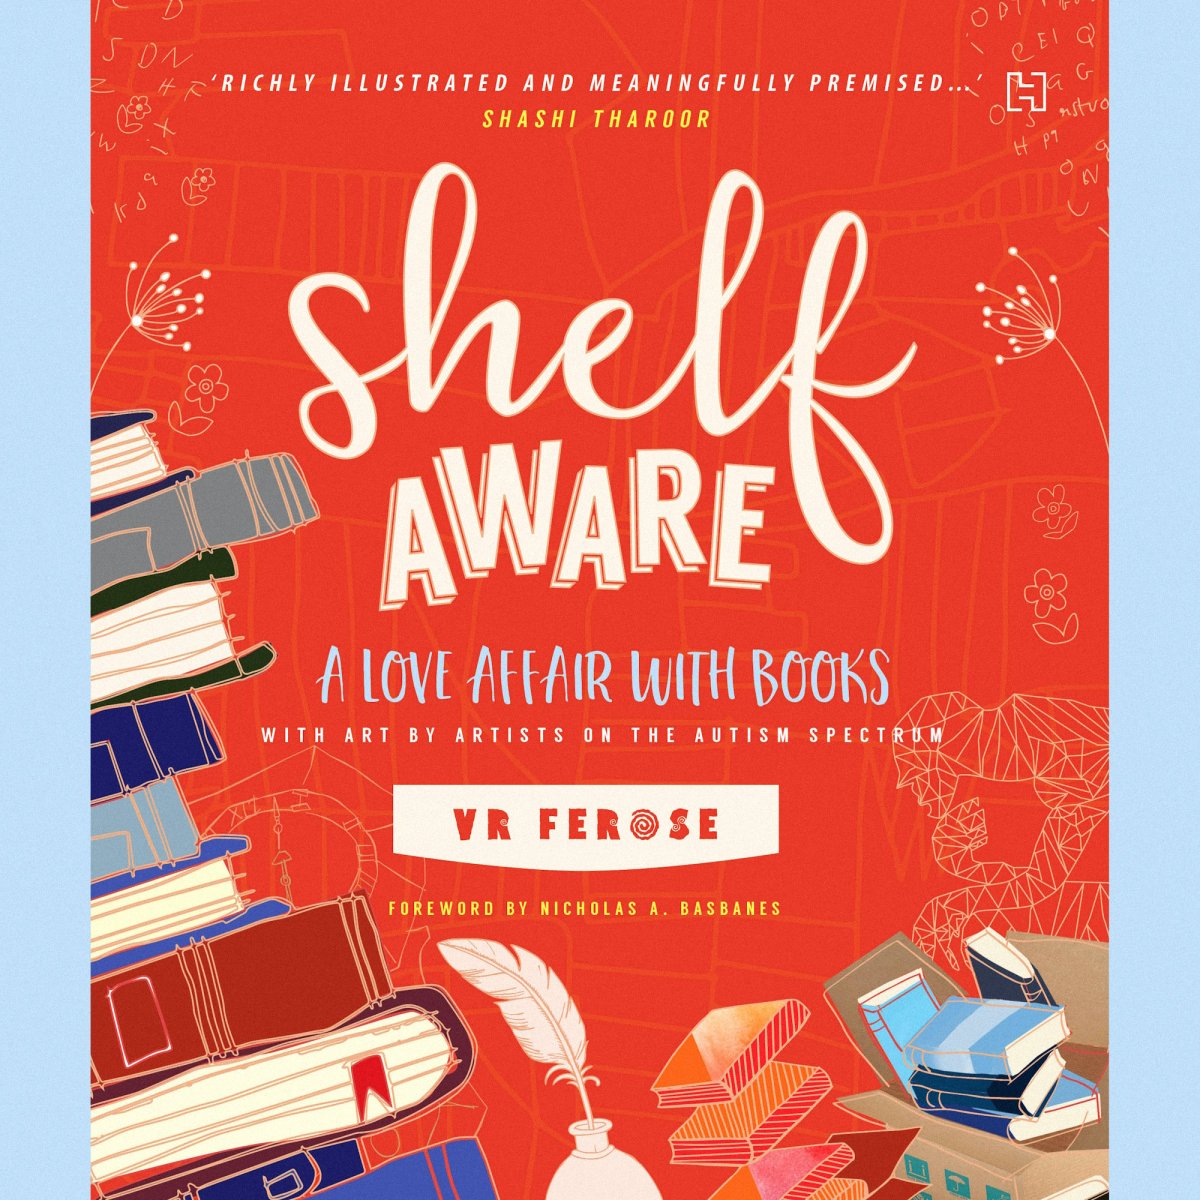 Book Review: Shelf Aware – A Love Affair with Books